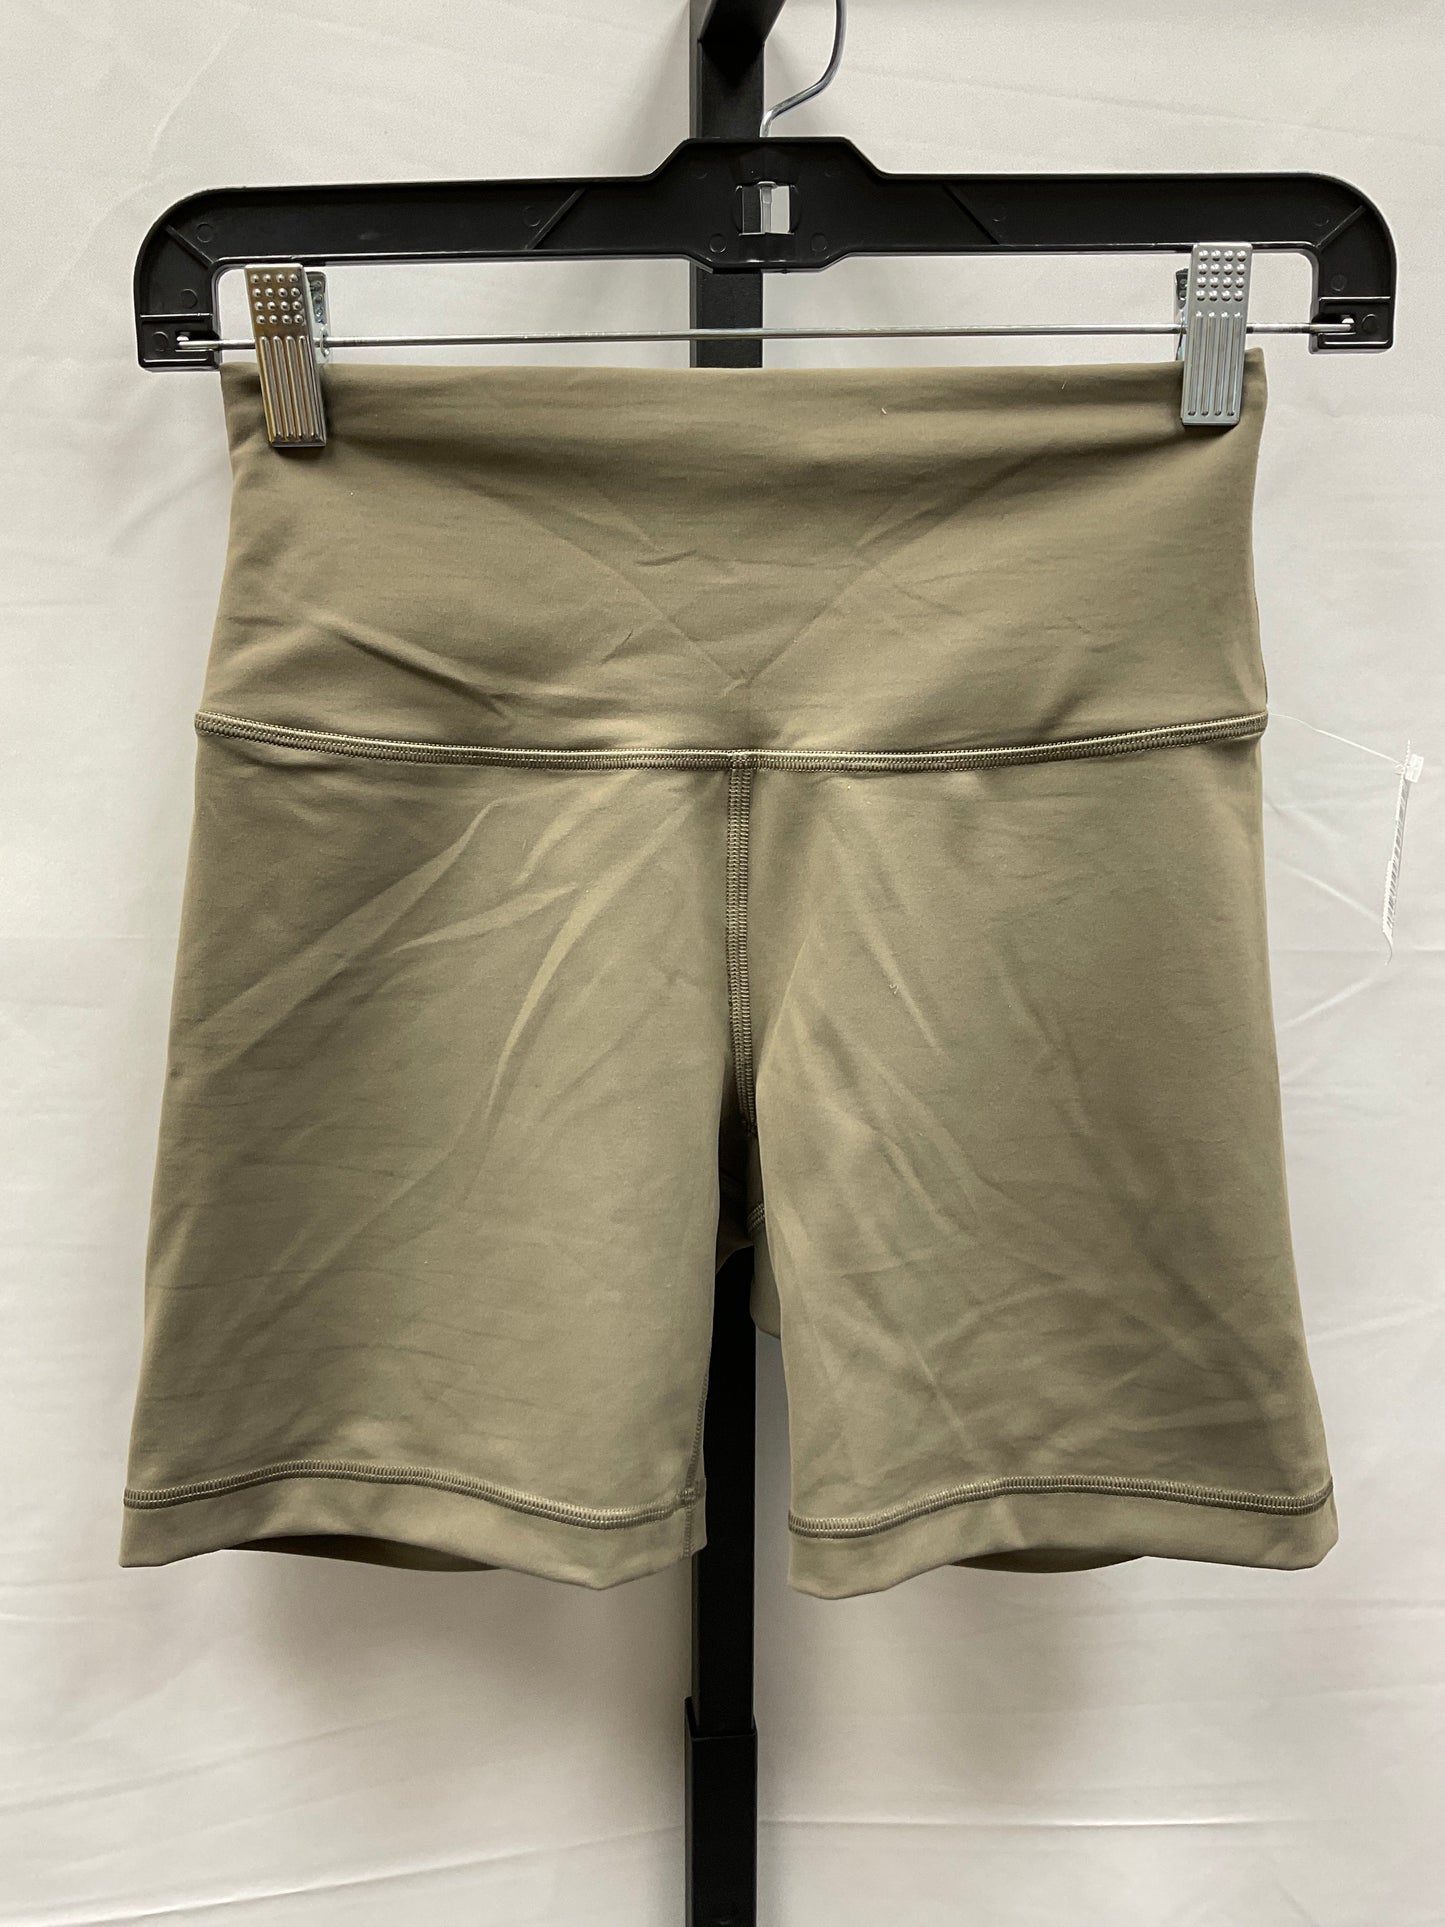 Green Athletic Shorts Lululemon, Size 6